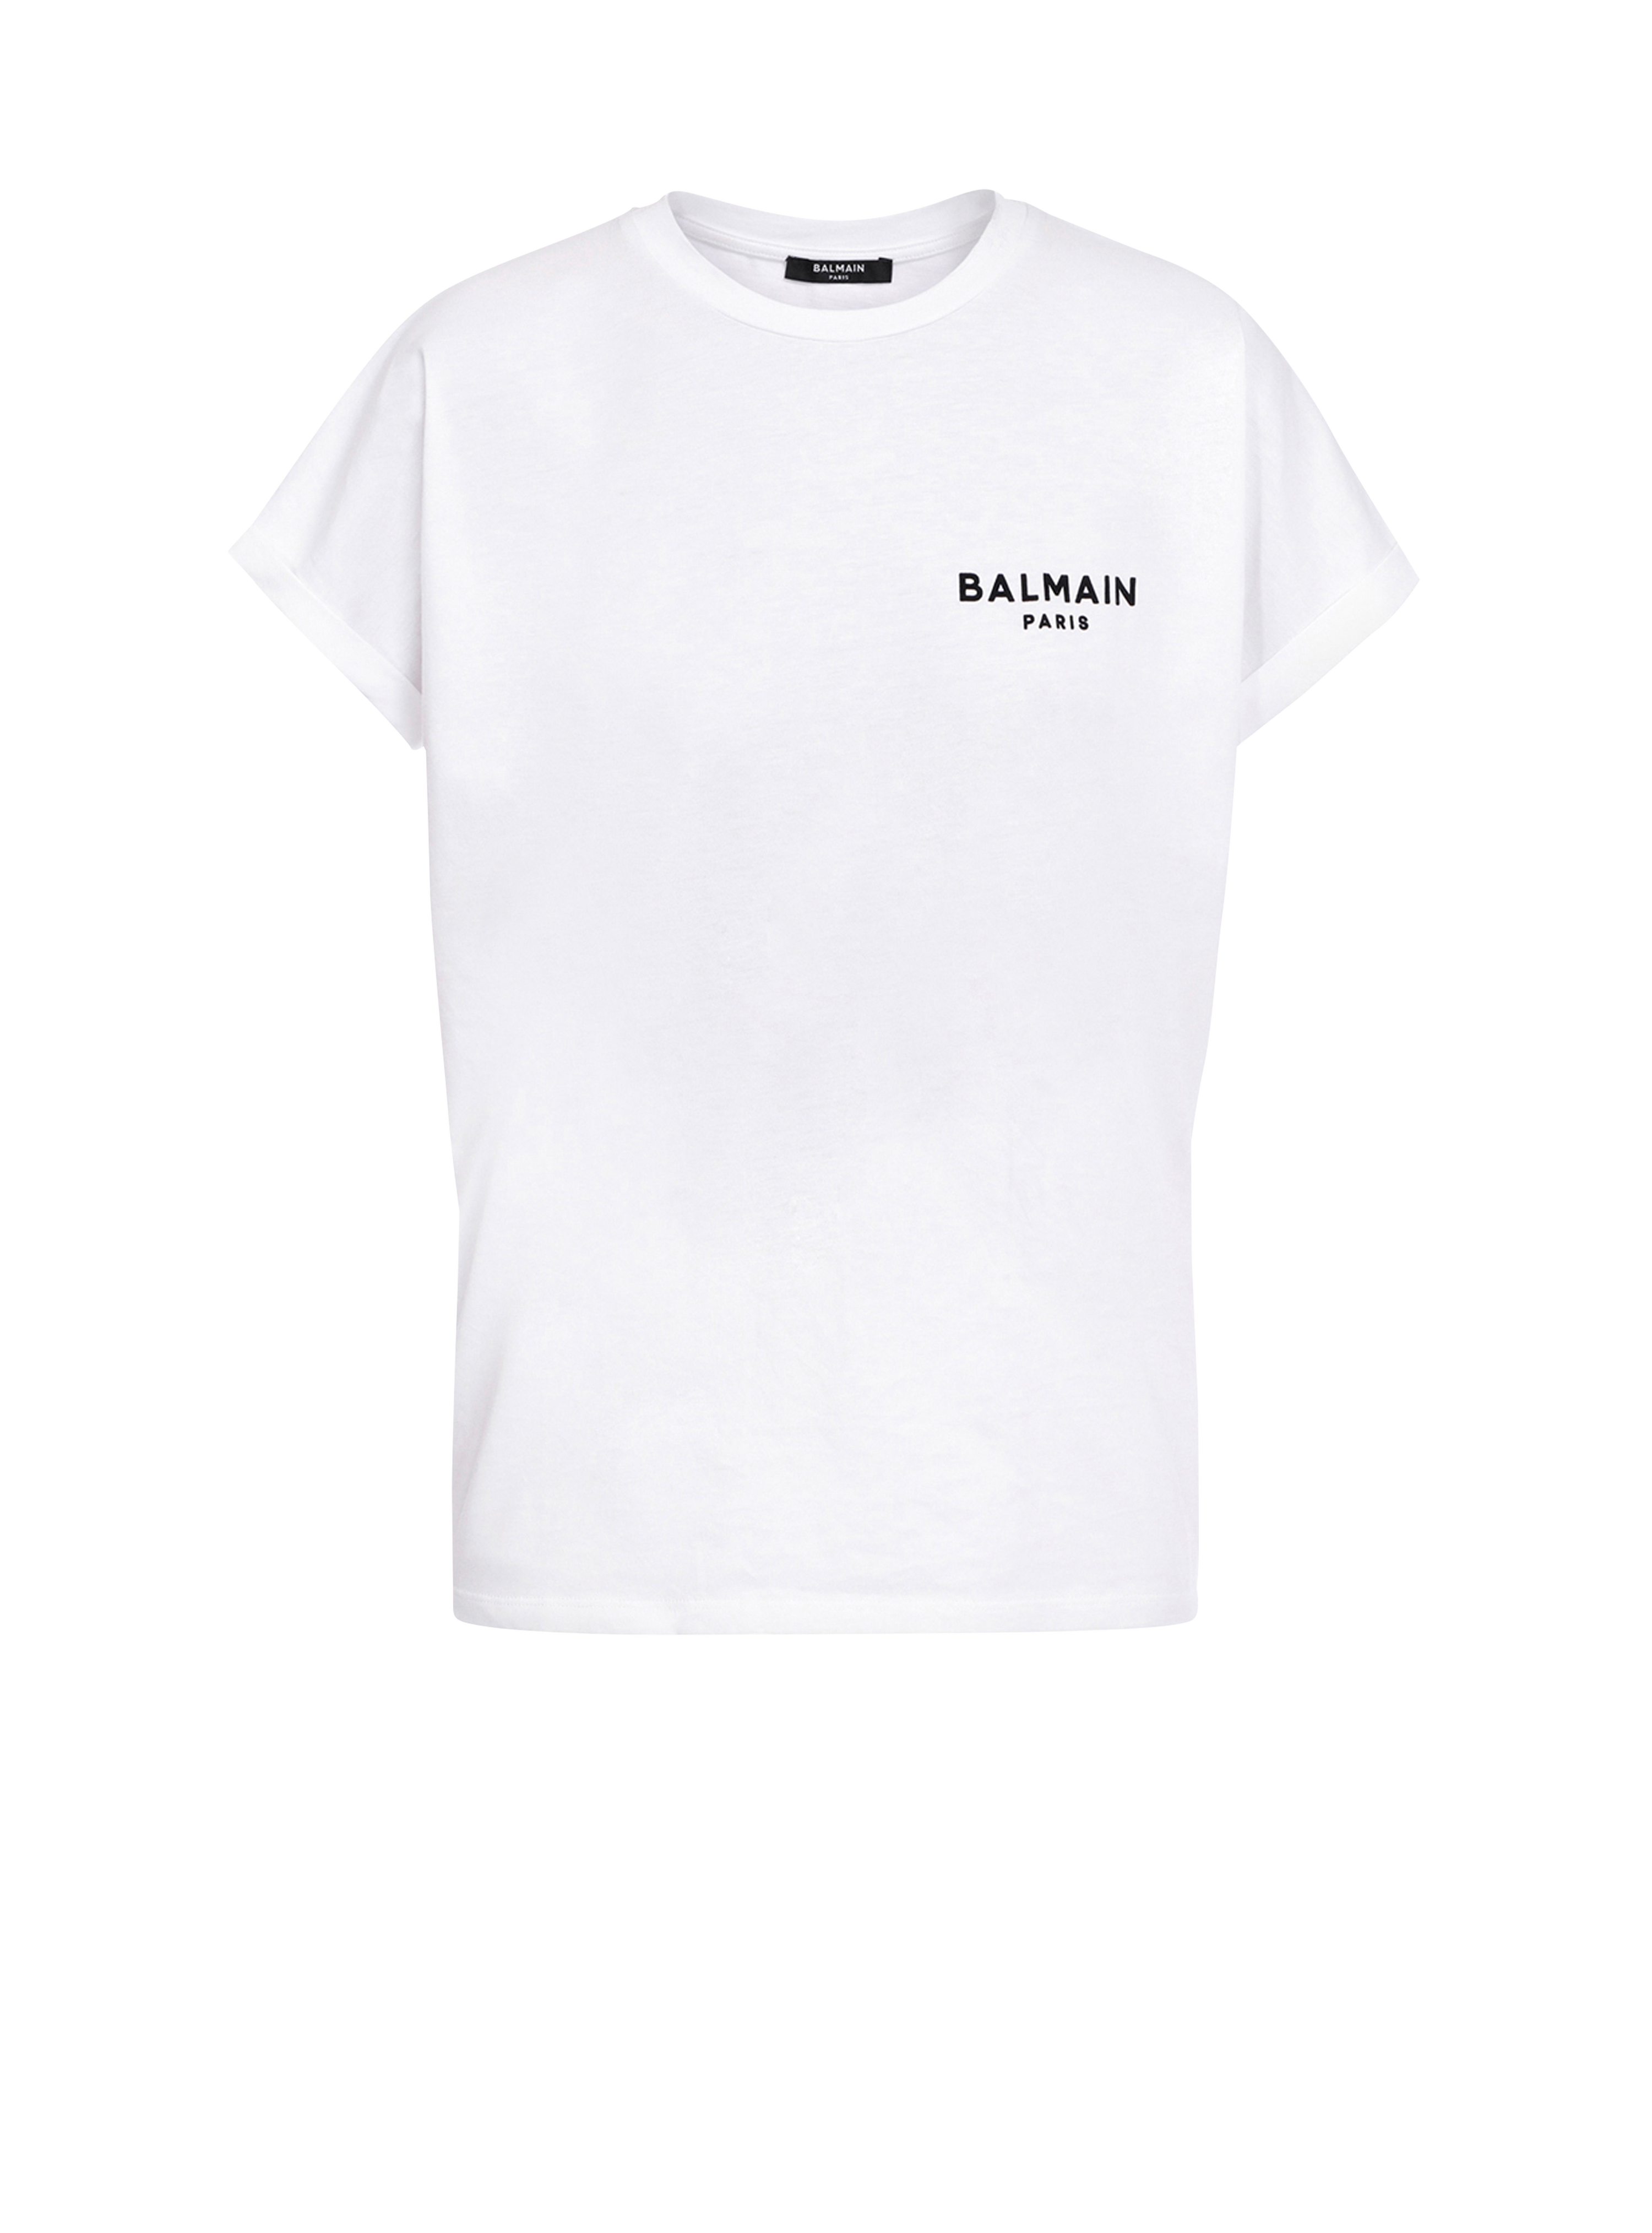 T-shirt en coton éco-design floqué petit logo Balmain, blanc